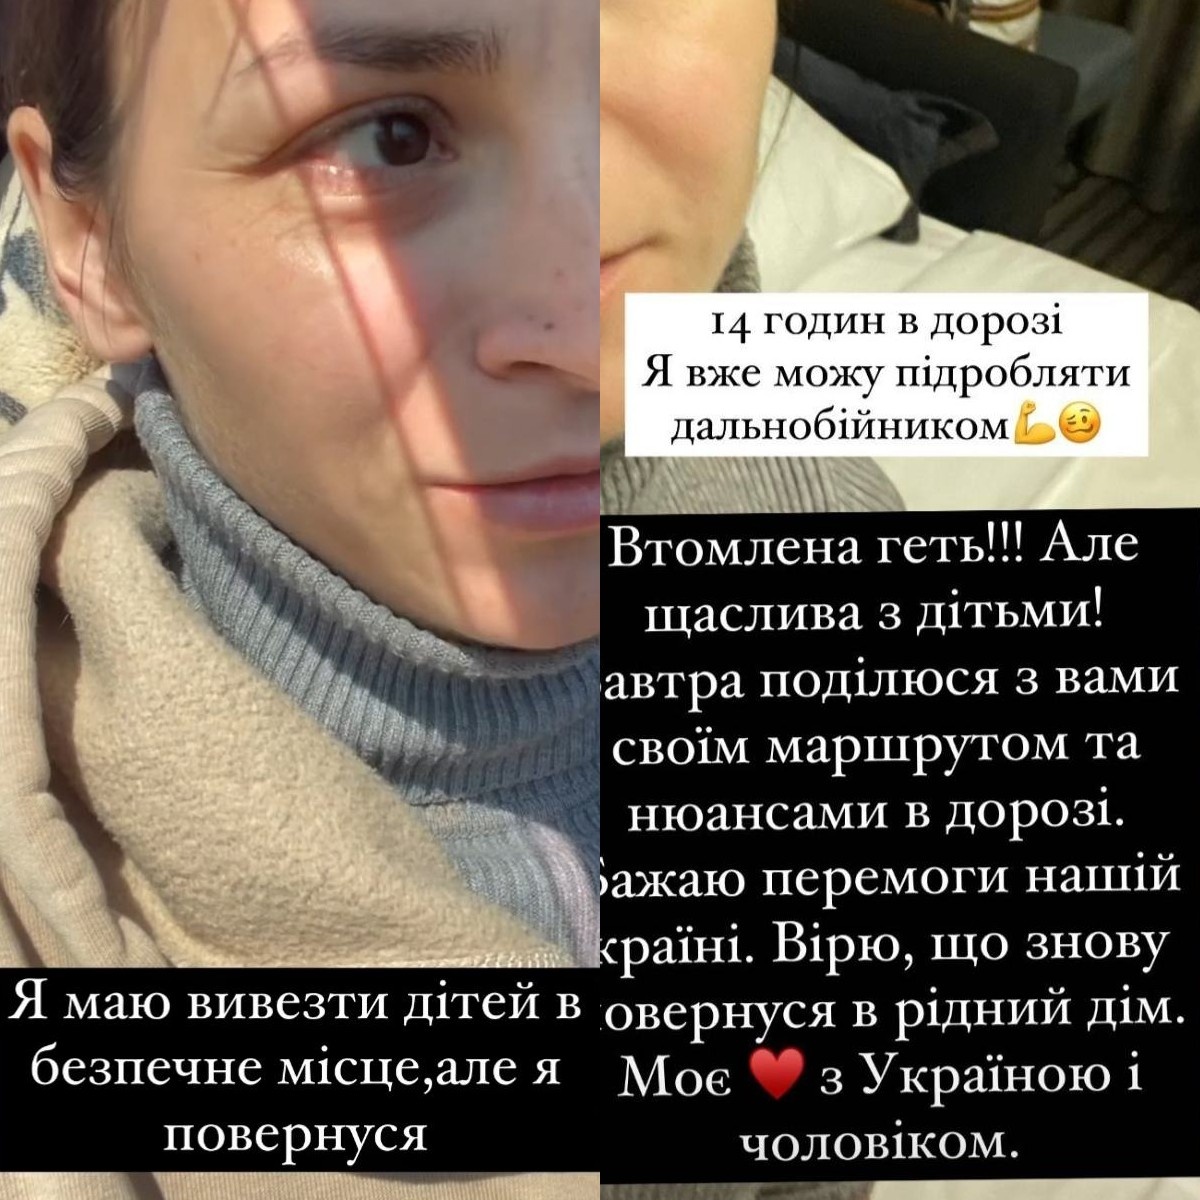 Скриншот: ilonagvozdeva / Instagram